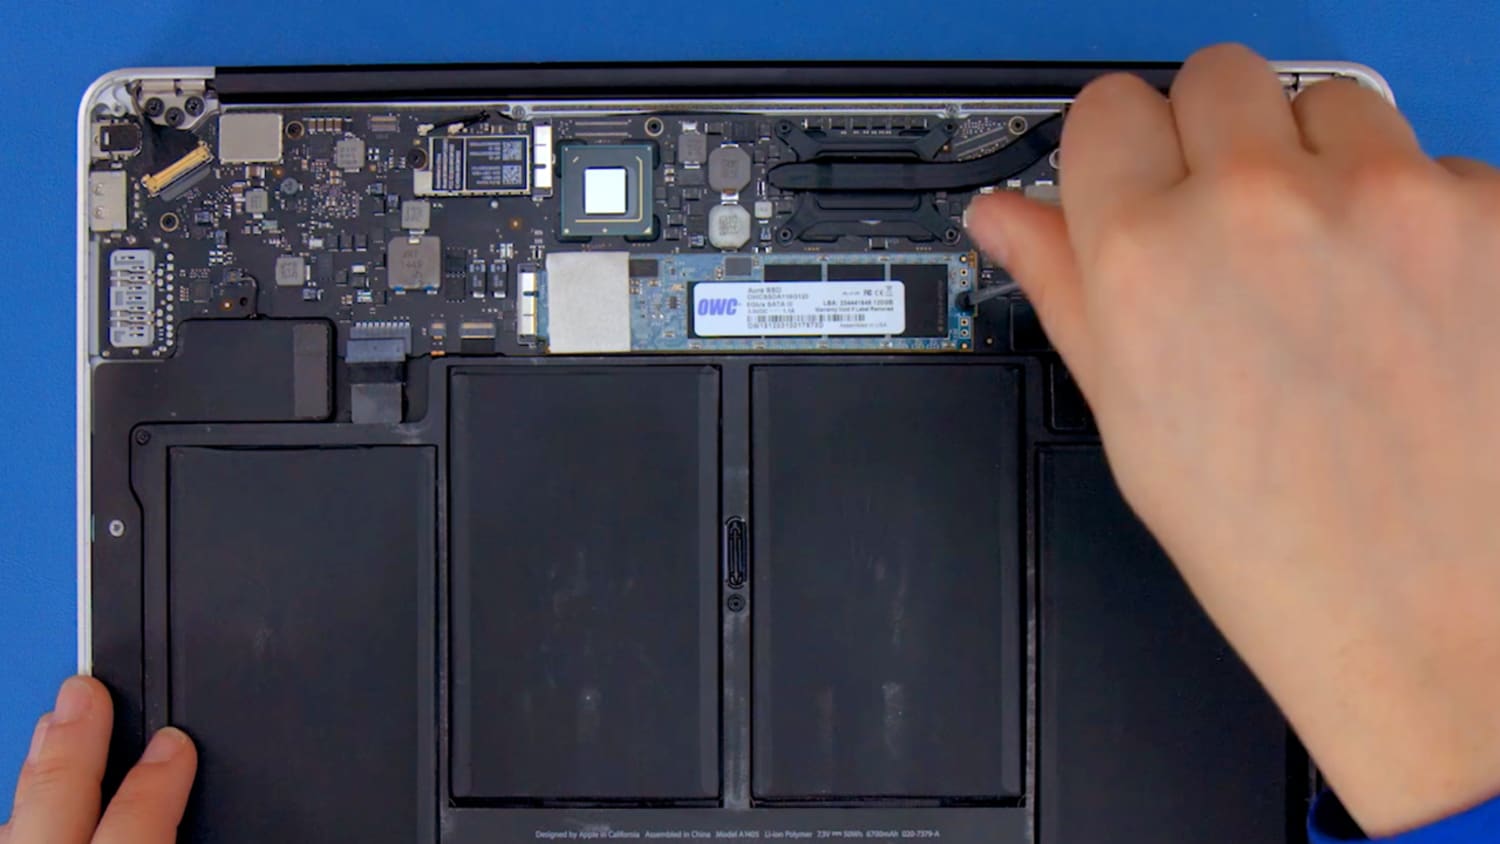 SSD Upgrade Kits MacBook Air 2012